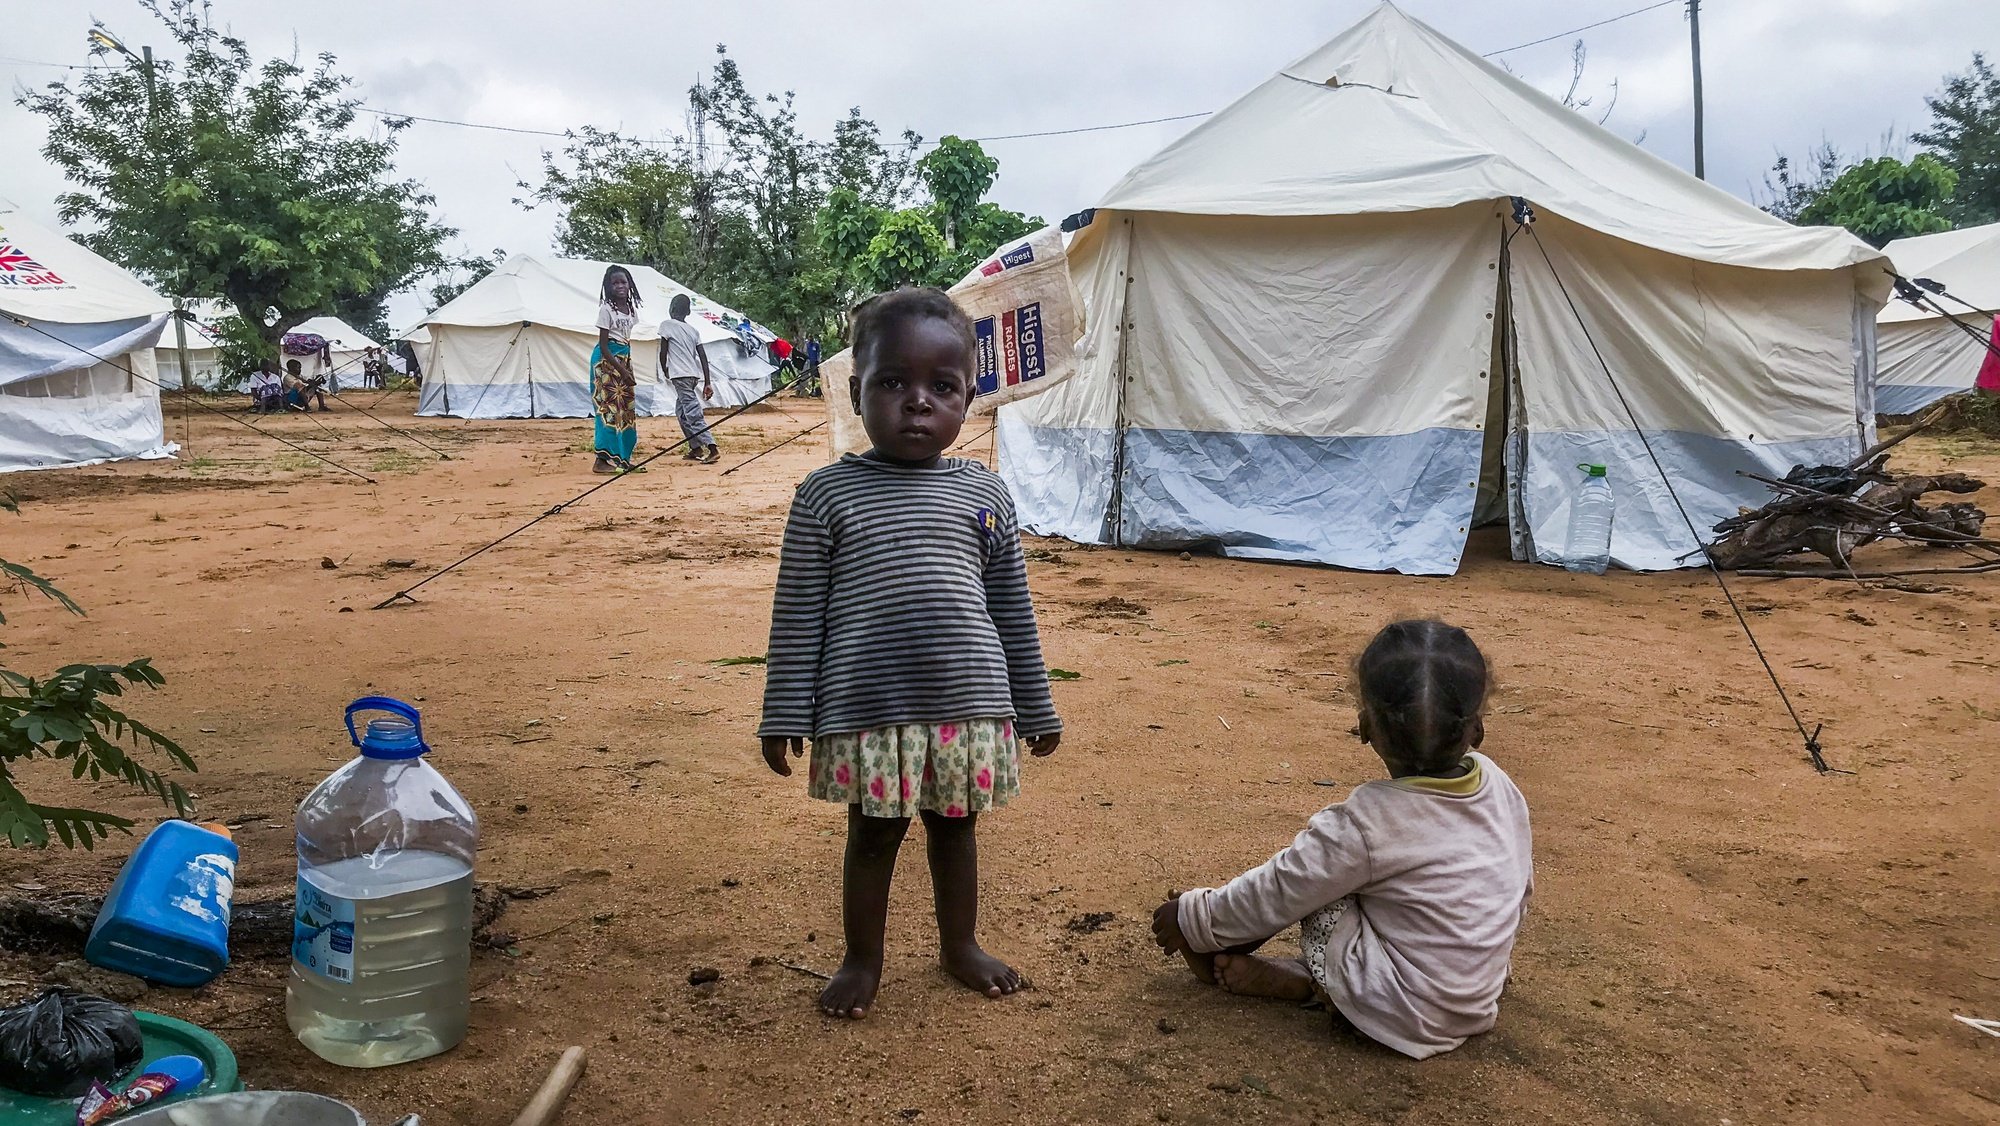 Crianças desalojadas da tempestade Ana, num espaço improvisado com tendas disponibilizadas pela Cruz Vermelha